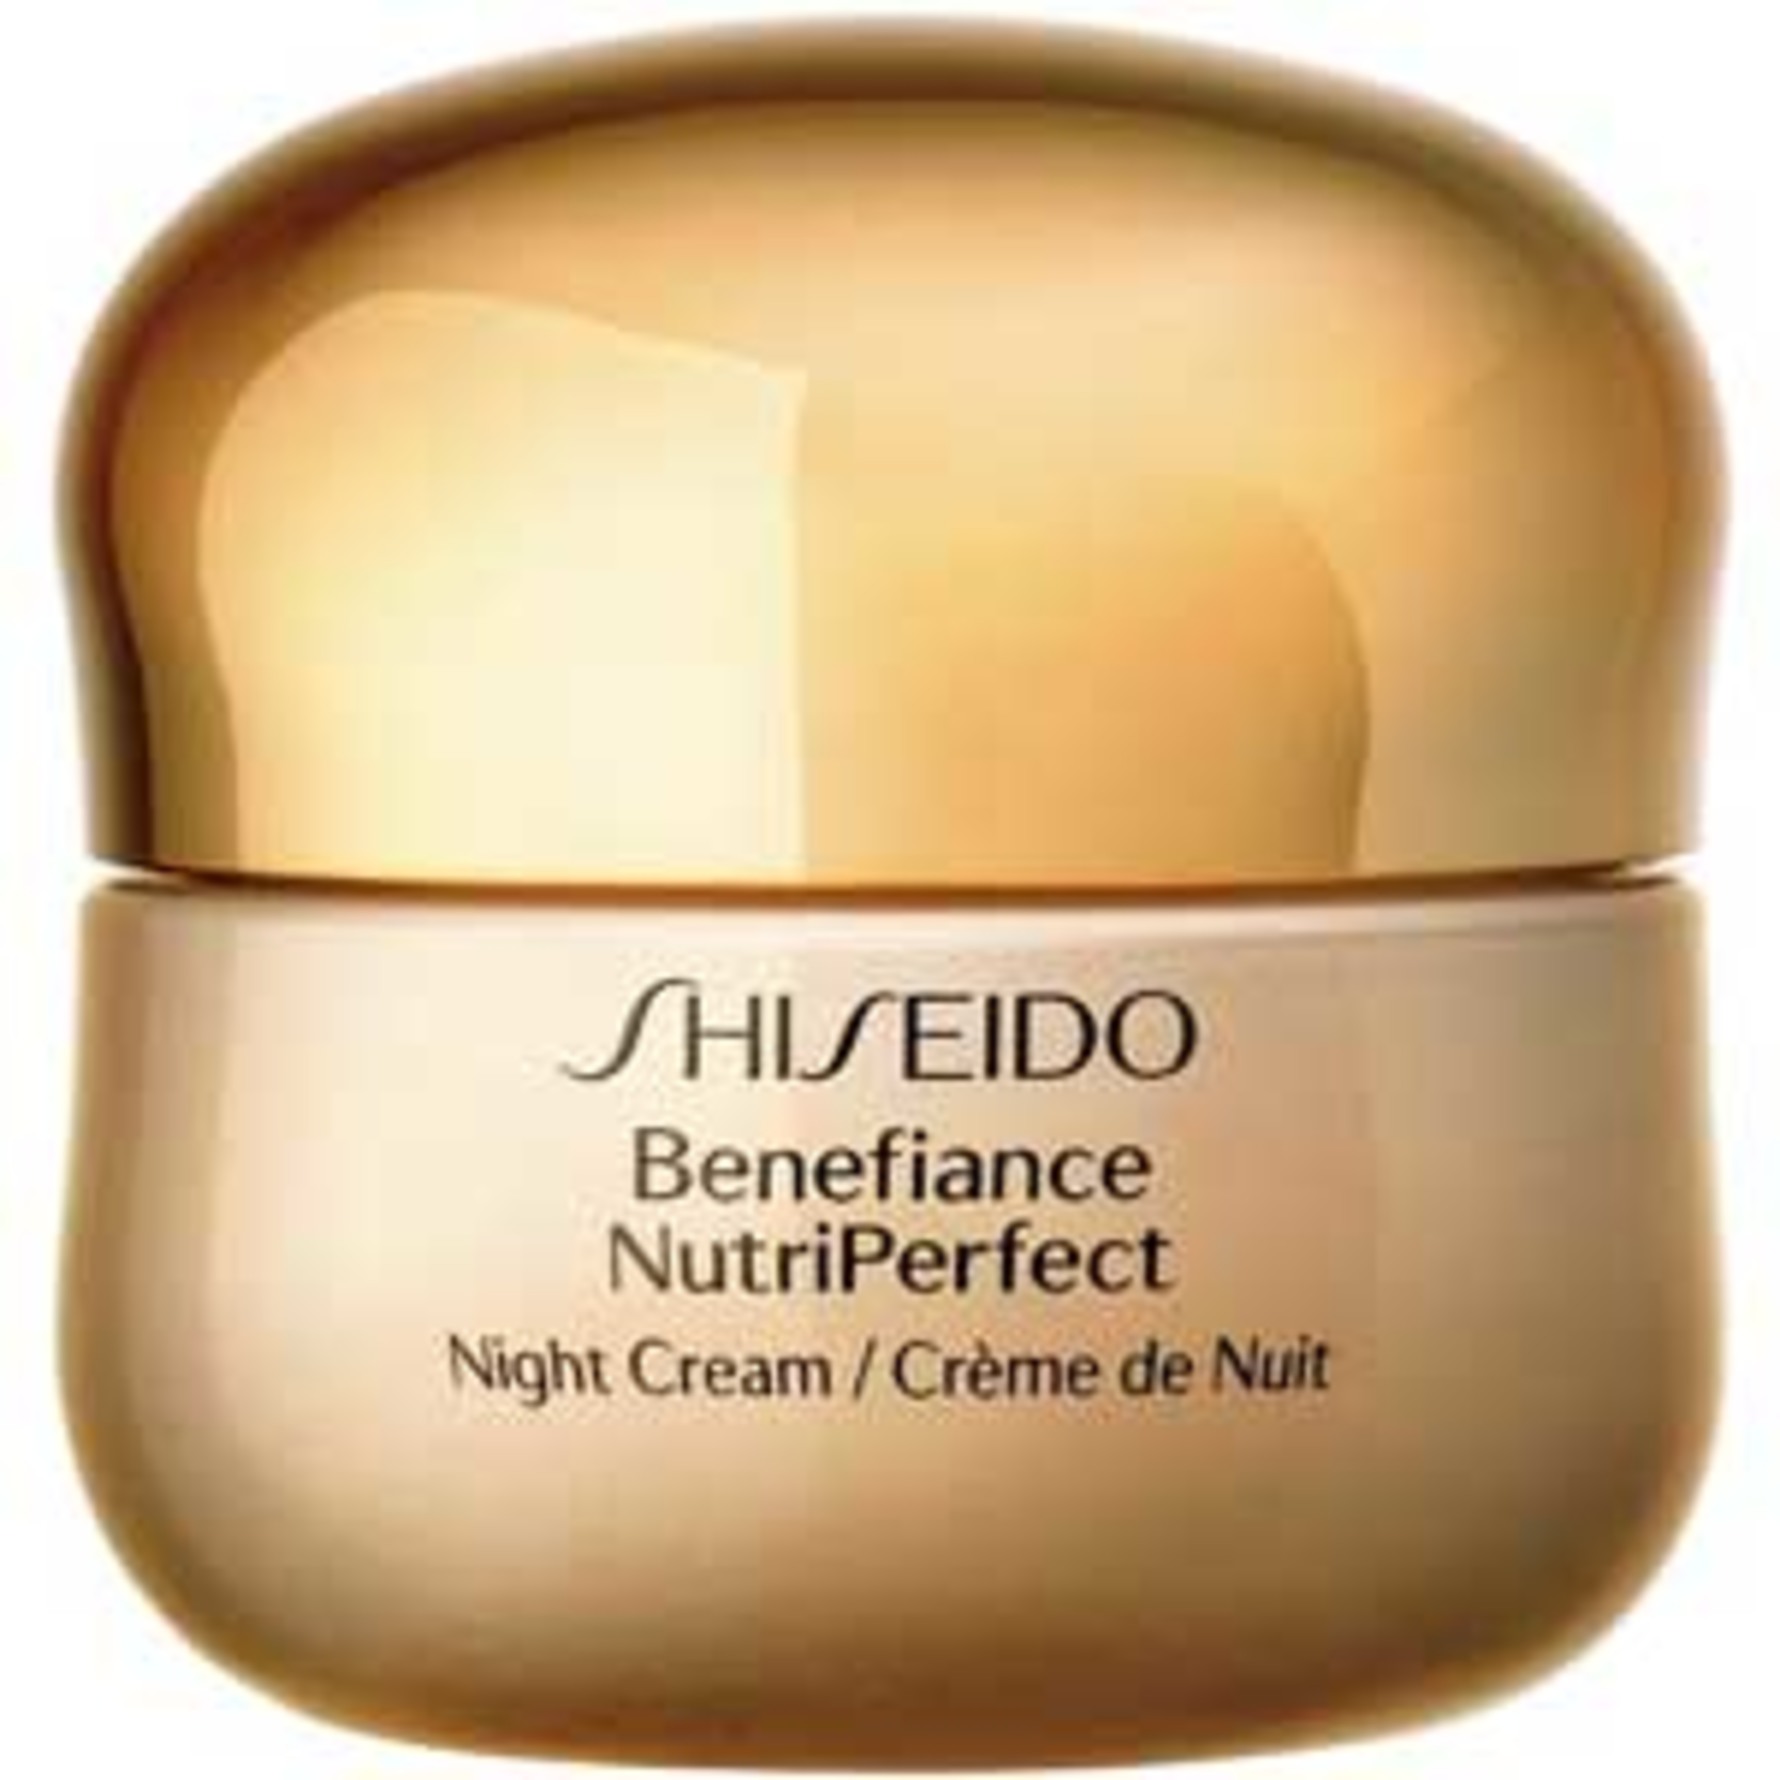 shiseido night emulsion review